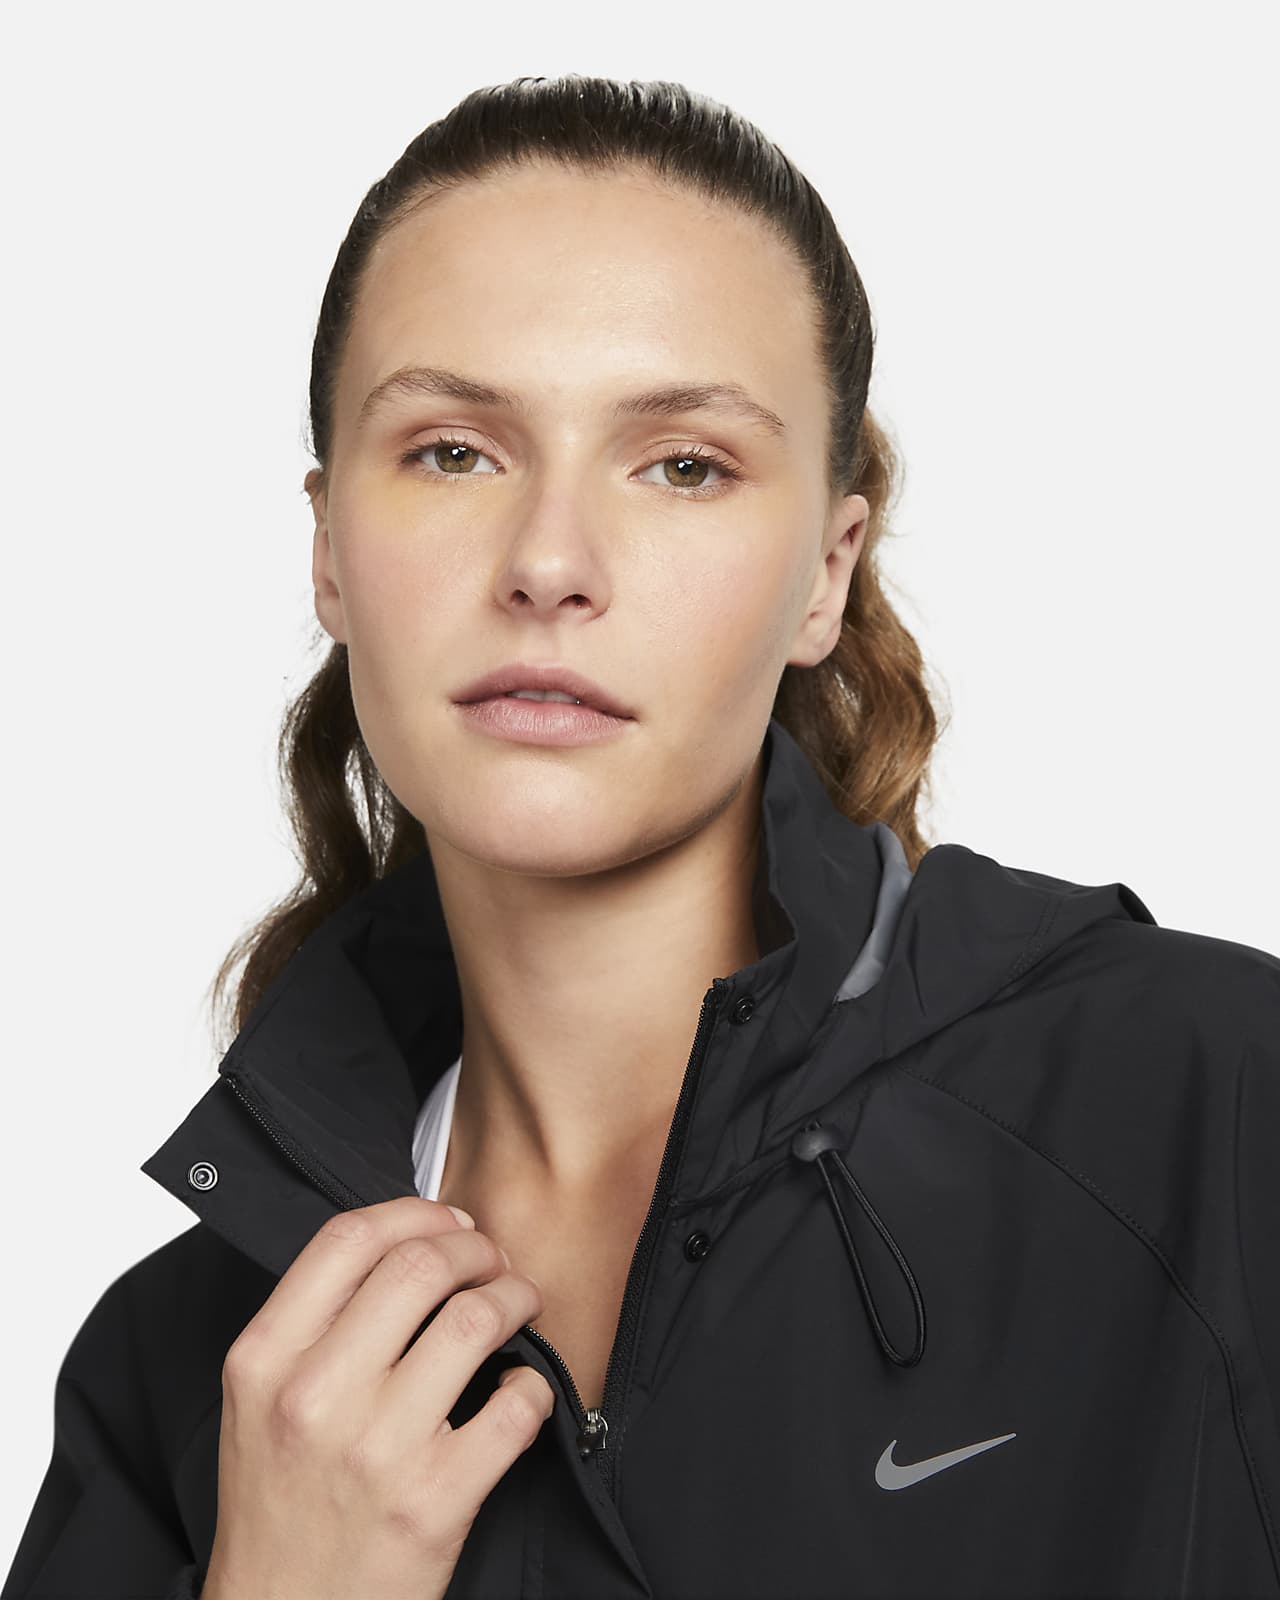 Nike Storm-FIT Swift Women's Running Jacket